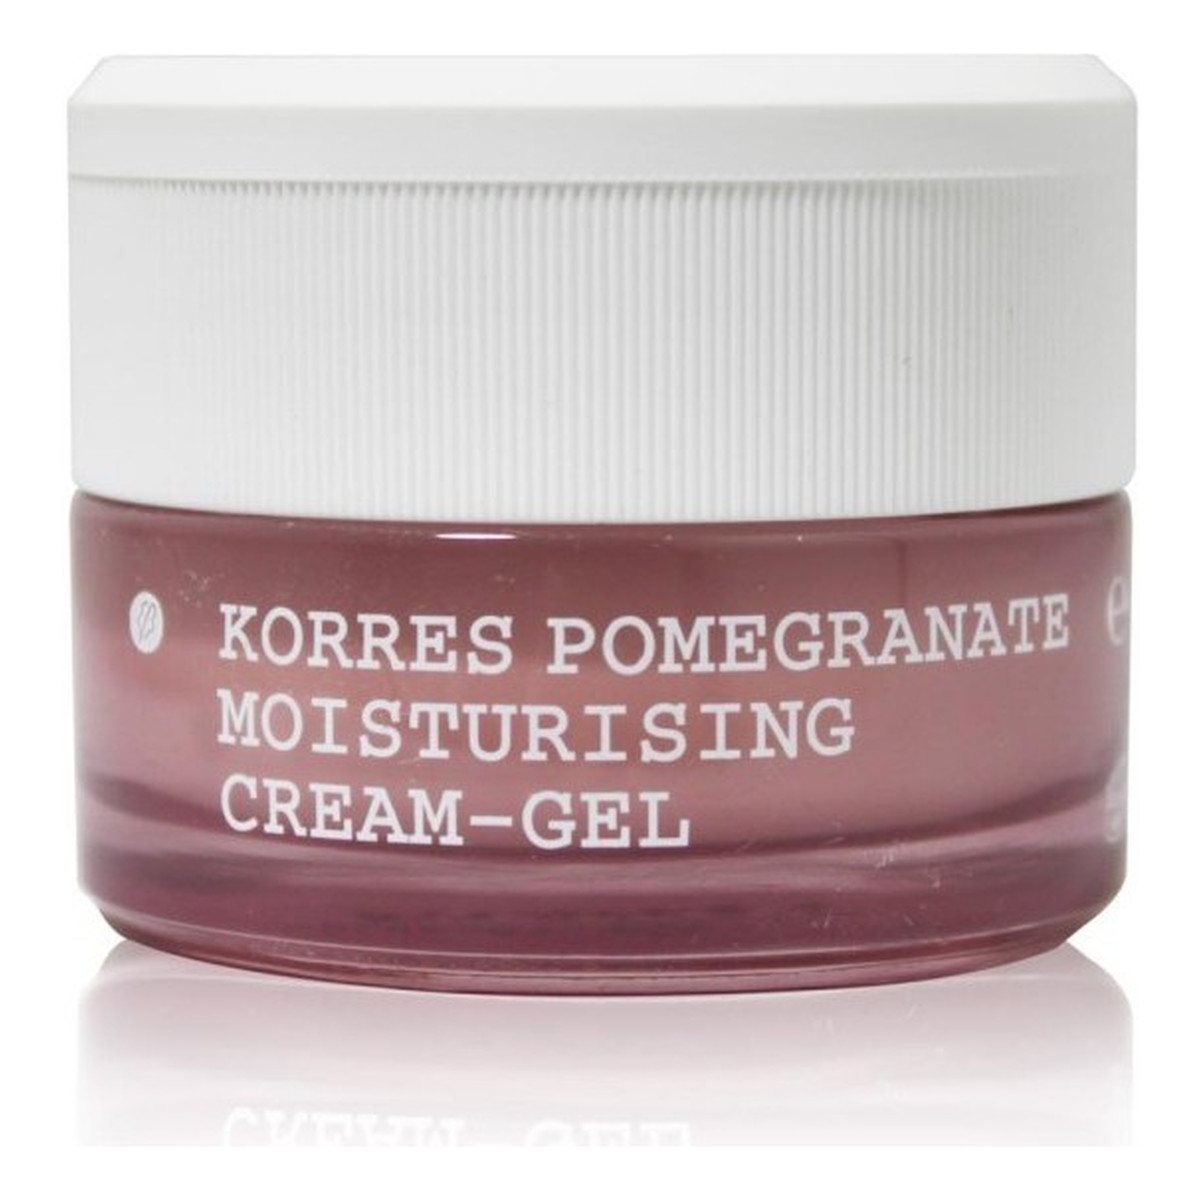 Korres Moisturising & Balancing Cream-Gel Pomegranate Oily/Combination Skin Nawilżający Żel-Krem do twarzy z wyciągiem z granatu 40ml